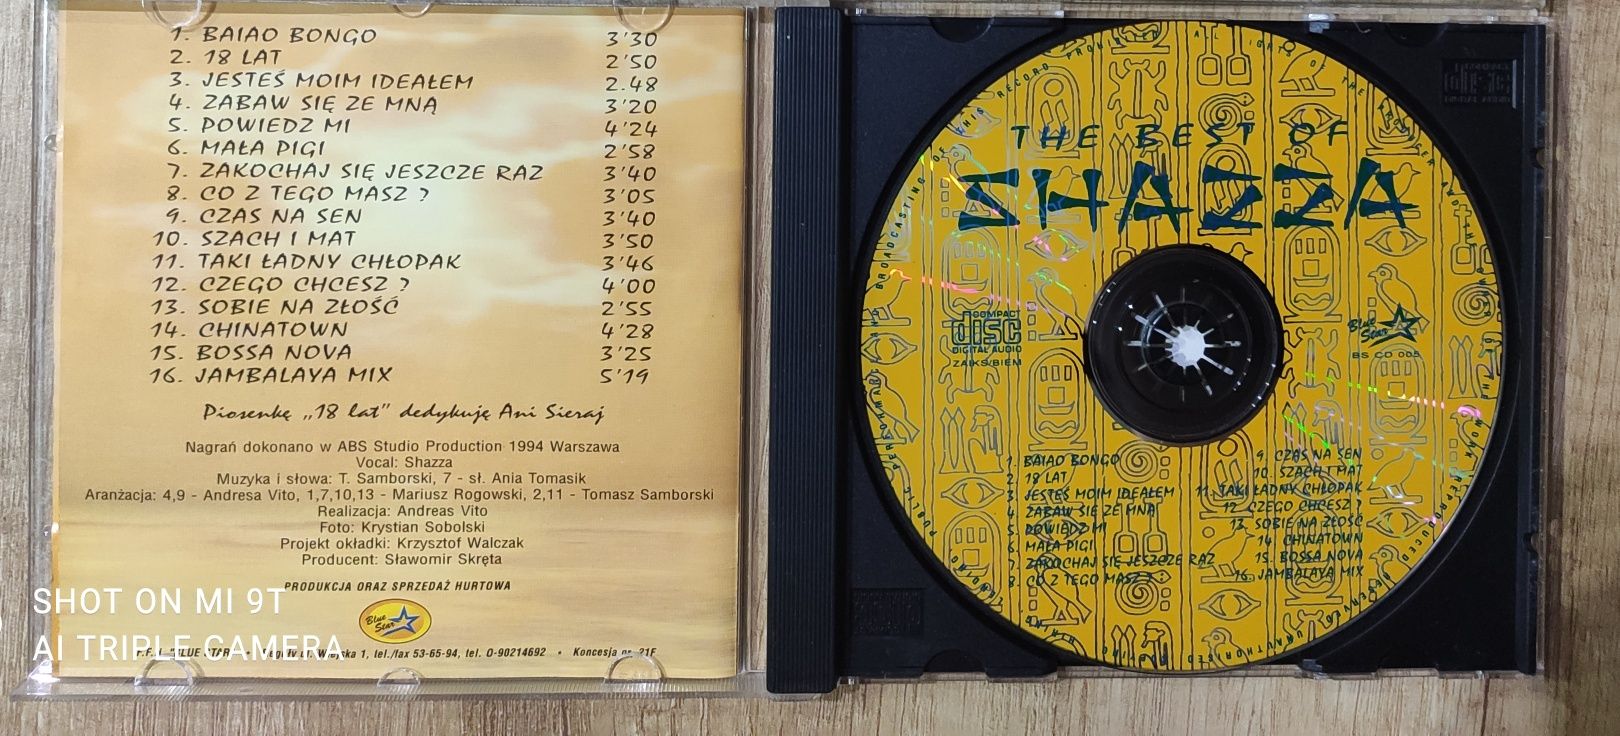 SHAZZA The Best Of wydanie BLUE STAR płyta CD disco polo